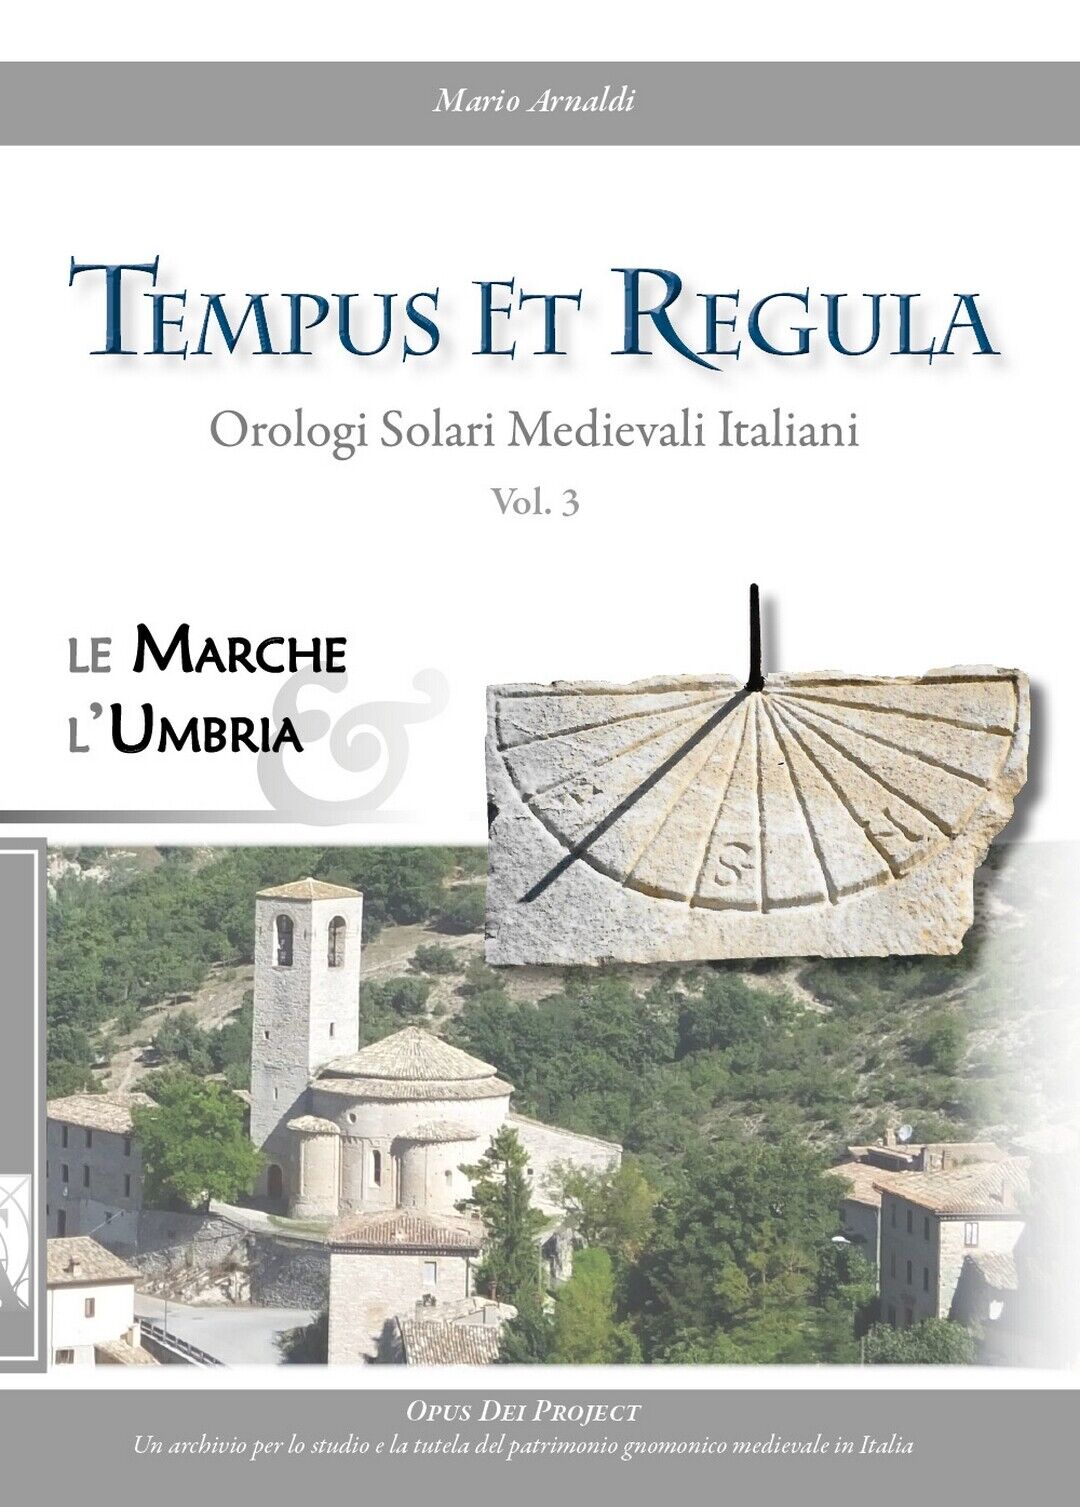 Tempus et Regula. Orologi Solari Medievali Italiani. Vol. 3  di Mario Arnaldi libro usato